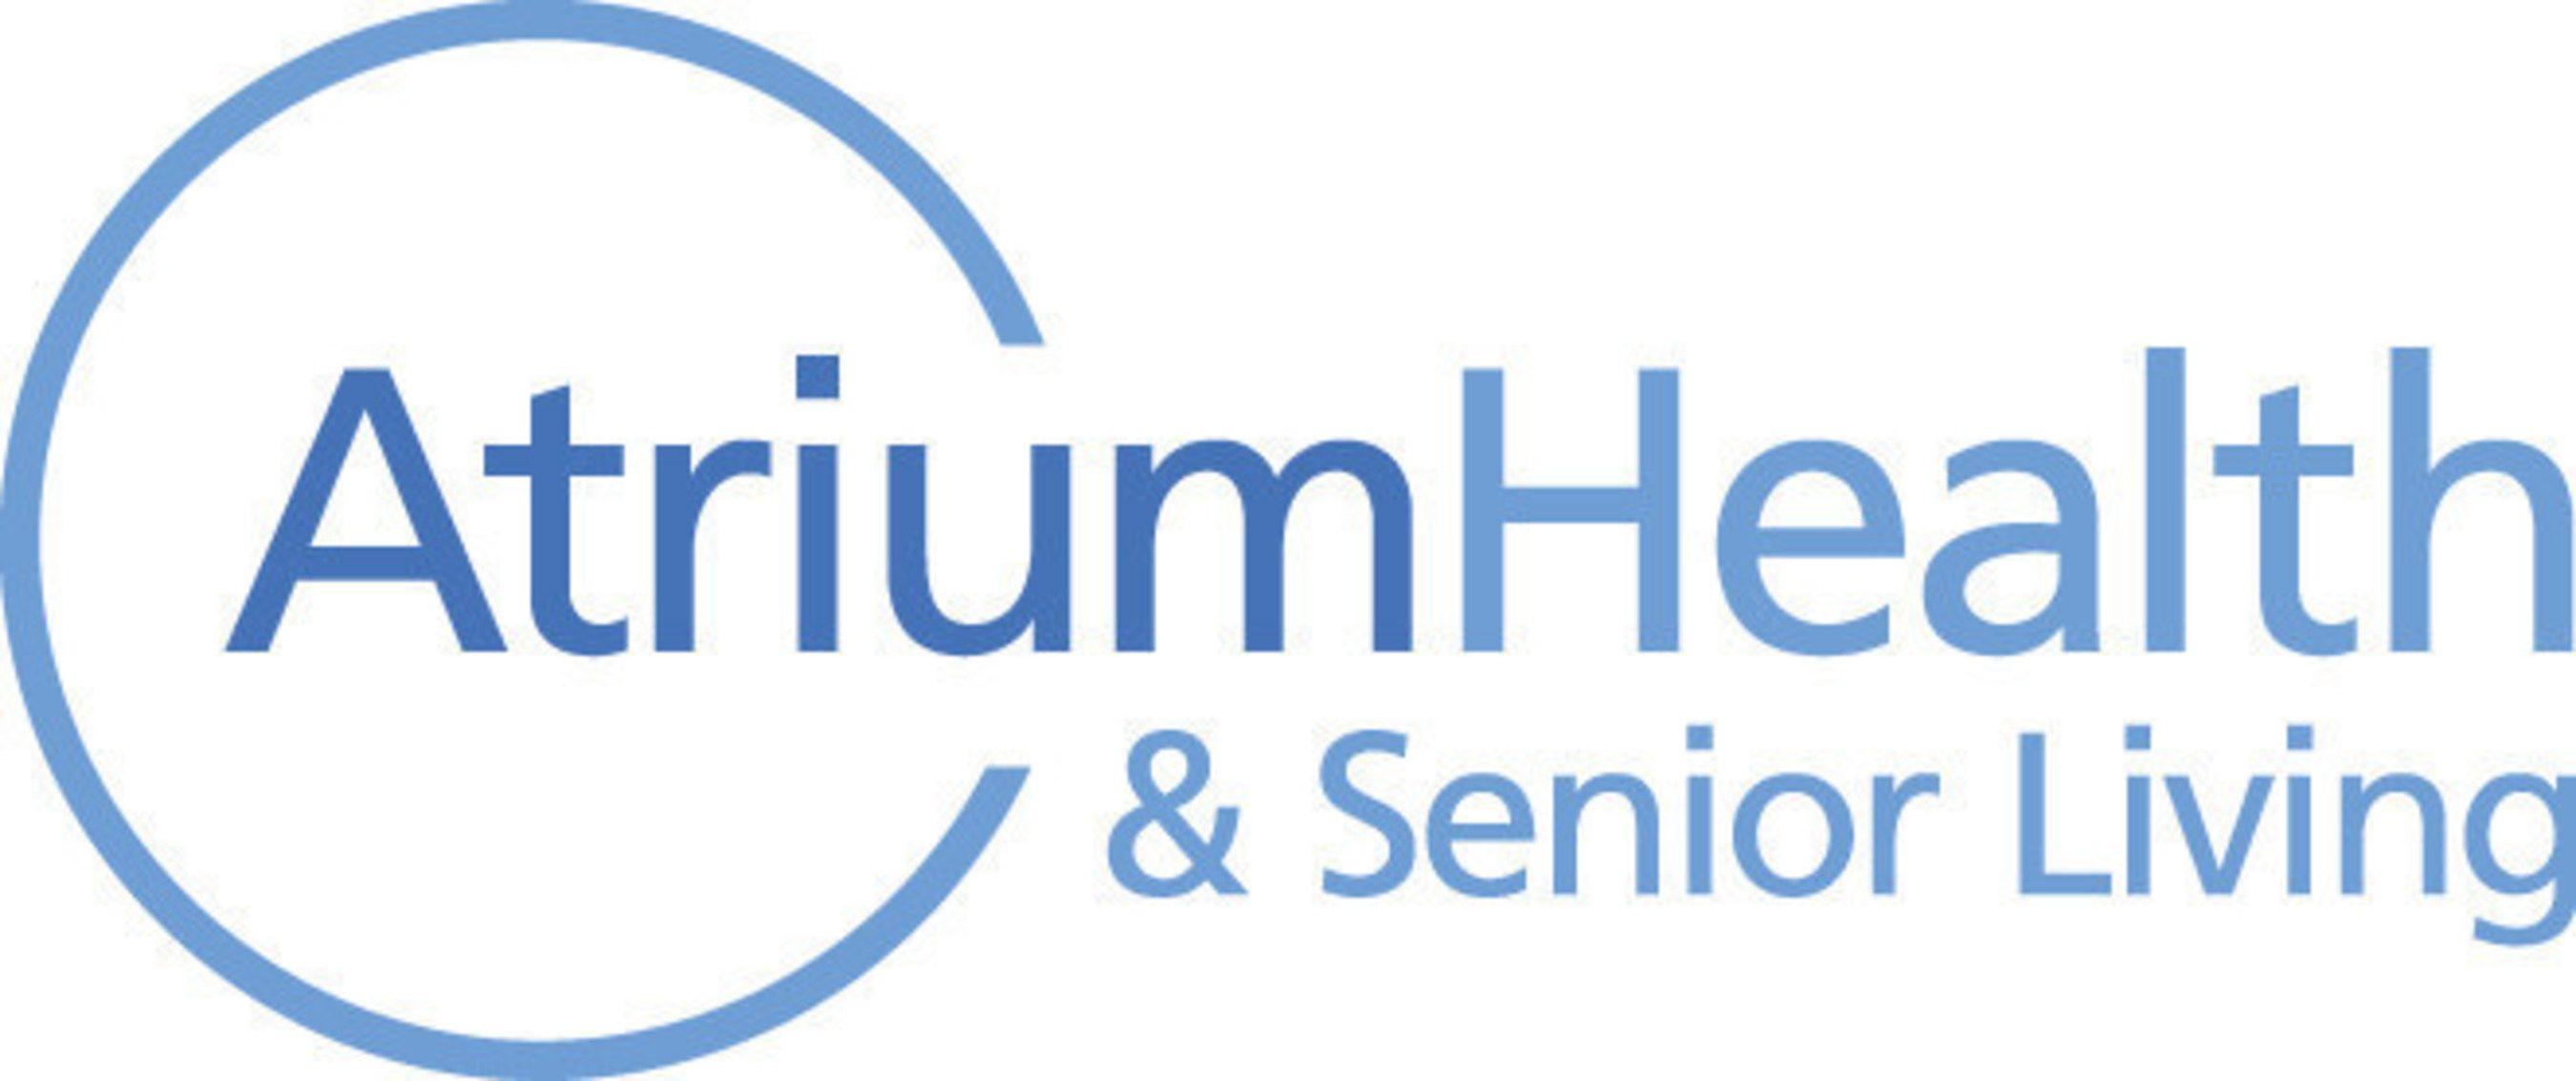 Seniorcarecenters Logo - Atrium Health & Senior Living Announces A New Post Acute Care Center